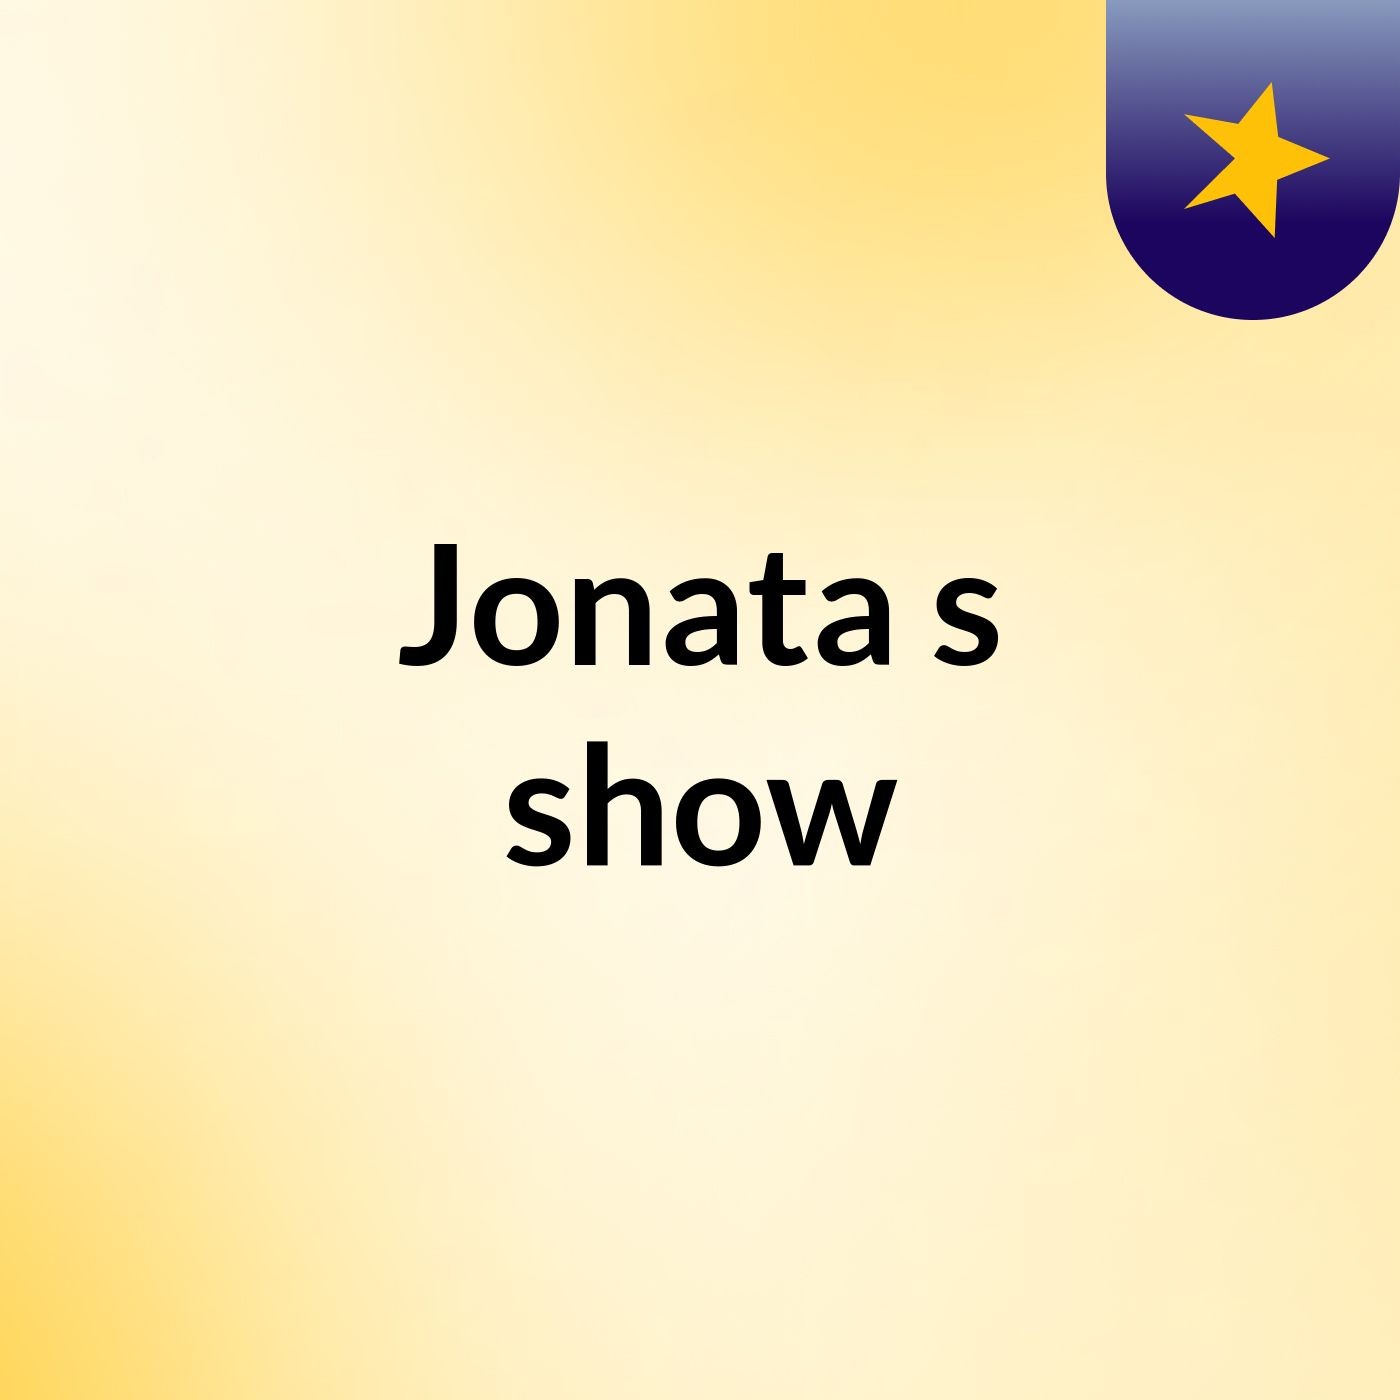 Jonata's show